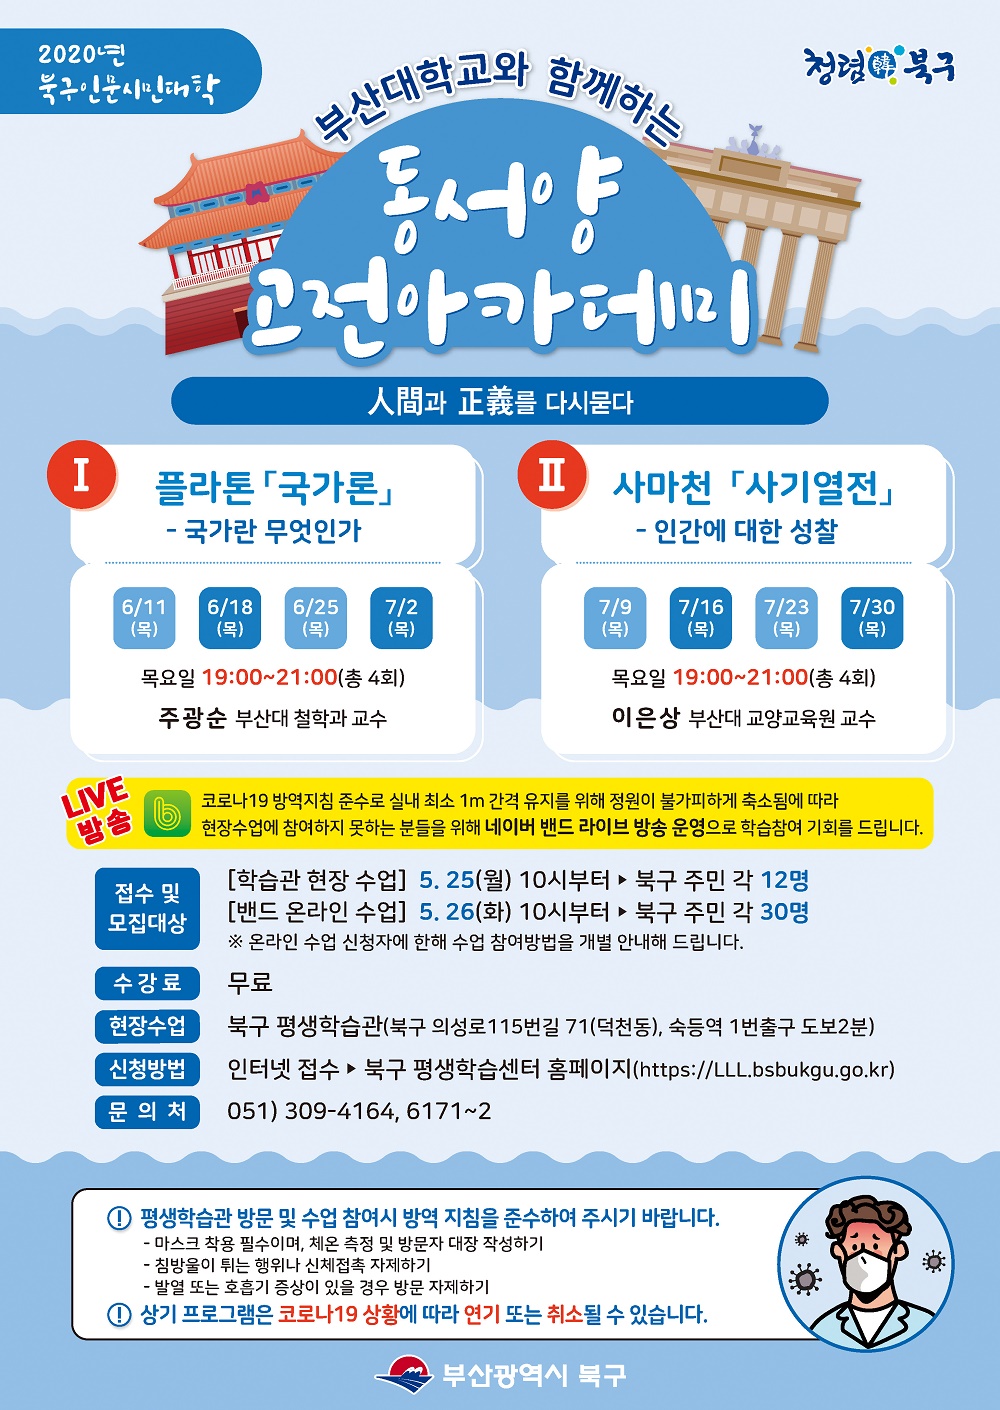 북구 평생학습관 「동서양 고전아카데미」 수강안내